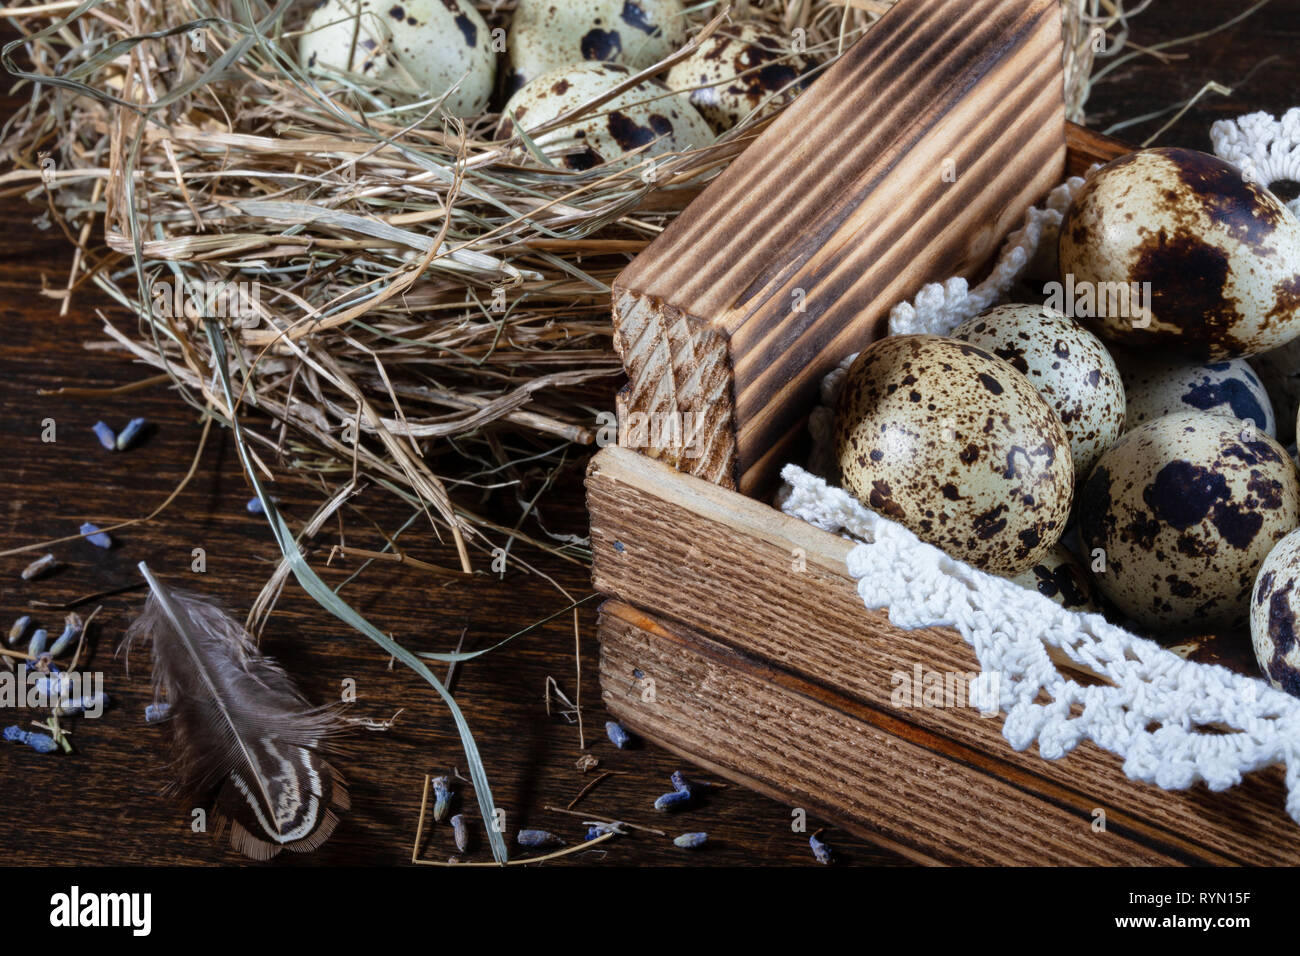 Wachteleier immer noch Leben. Wachteleier liegen in einem Nest aus Heu und  in einem hölzernen Kasten auf einer Spitze Serviette. Close-up  Stockfotografie - Alamy